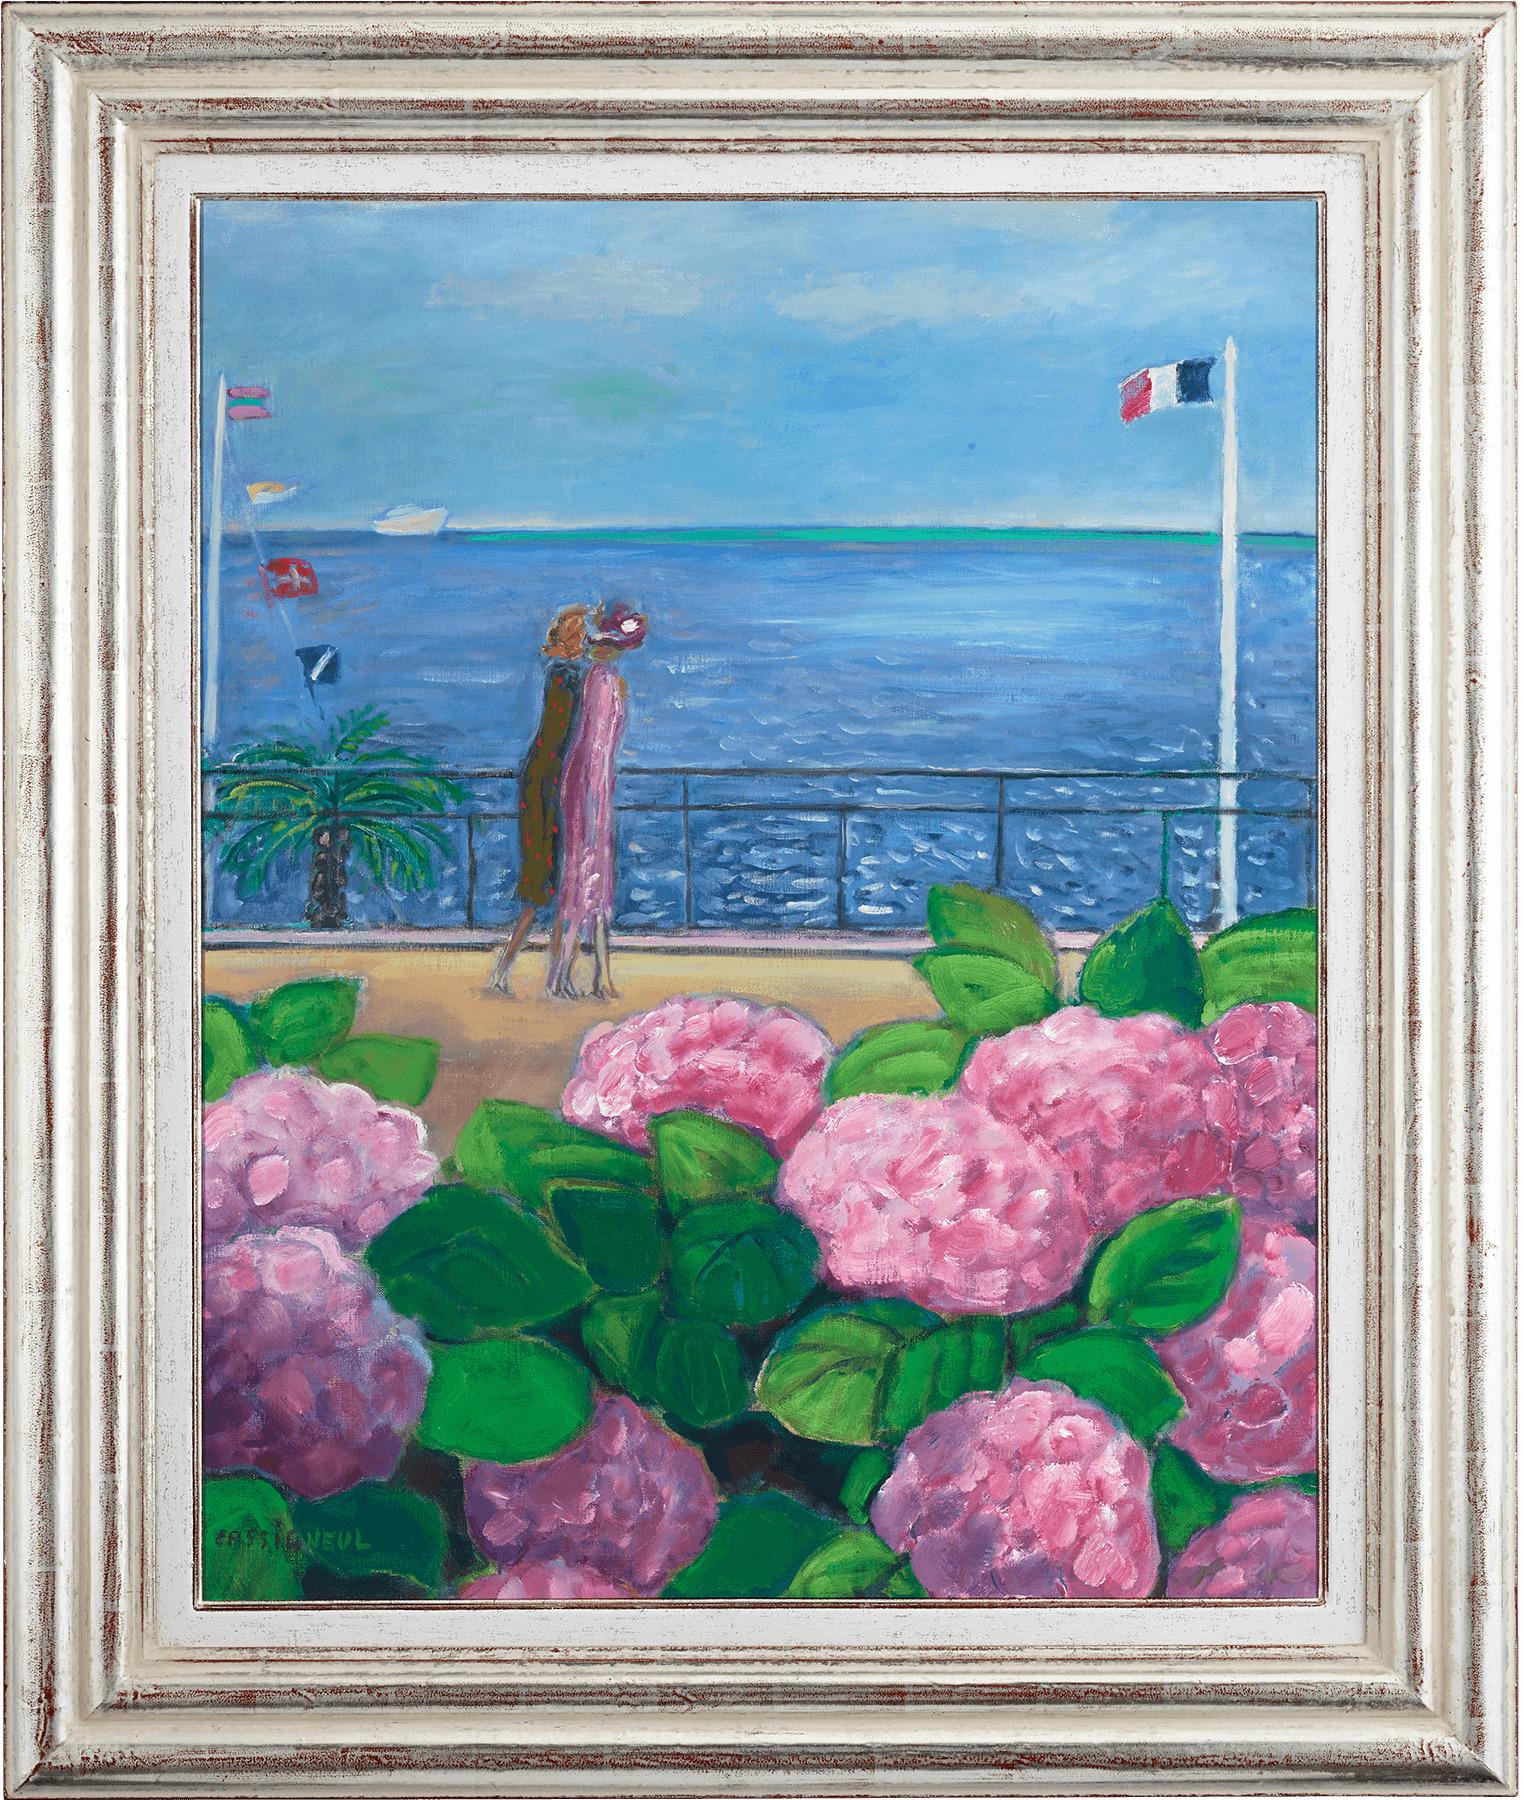 La Croisette - Painting by Jean-Pierre Cassigneul